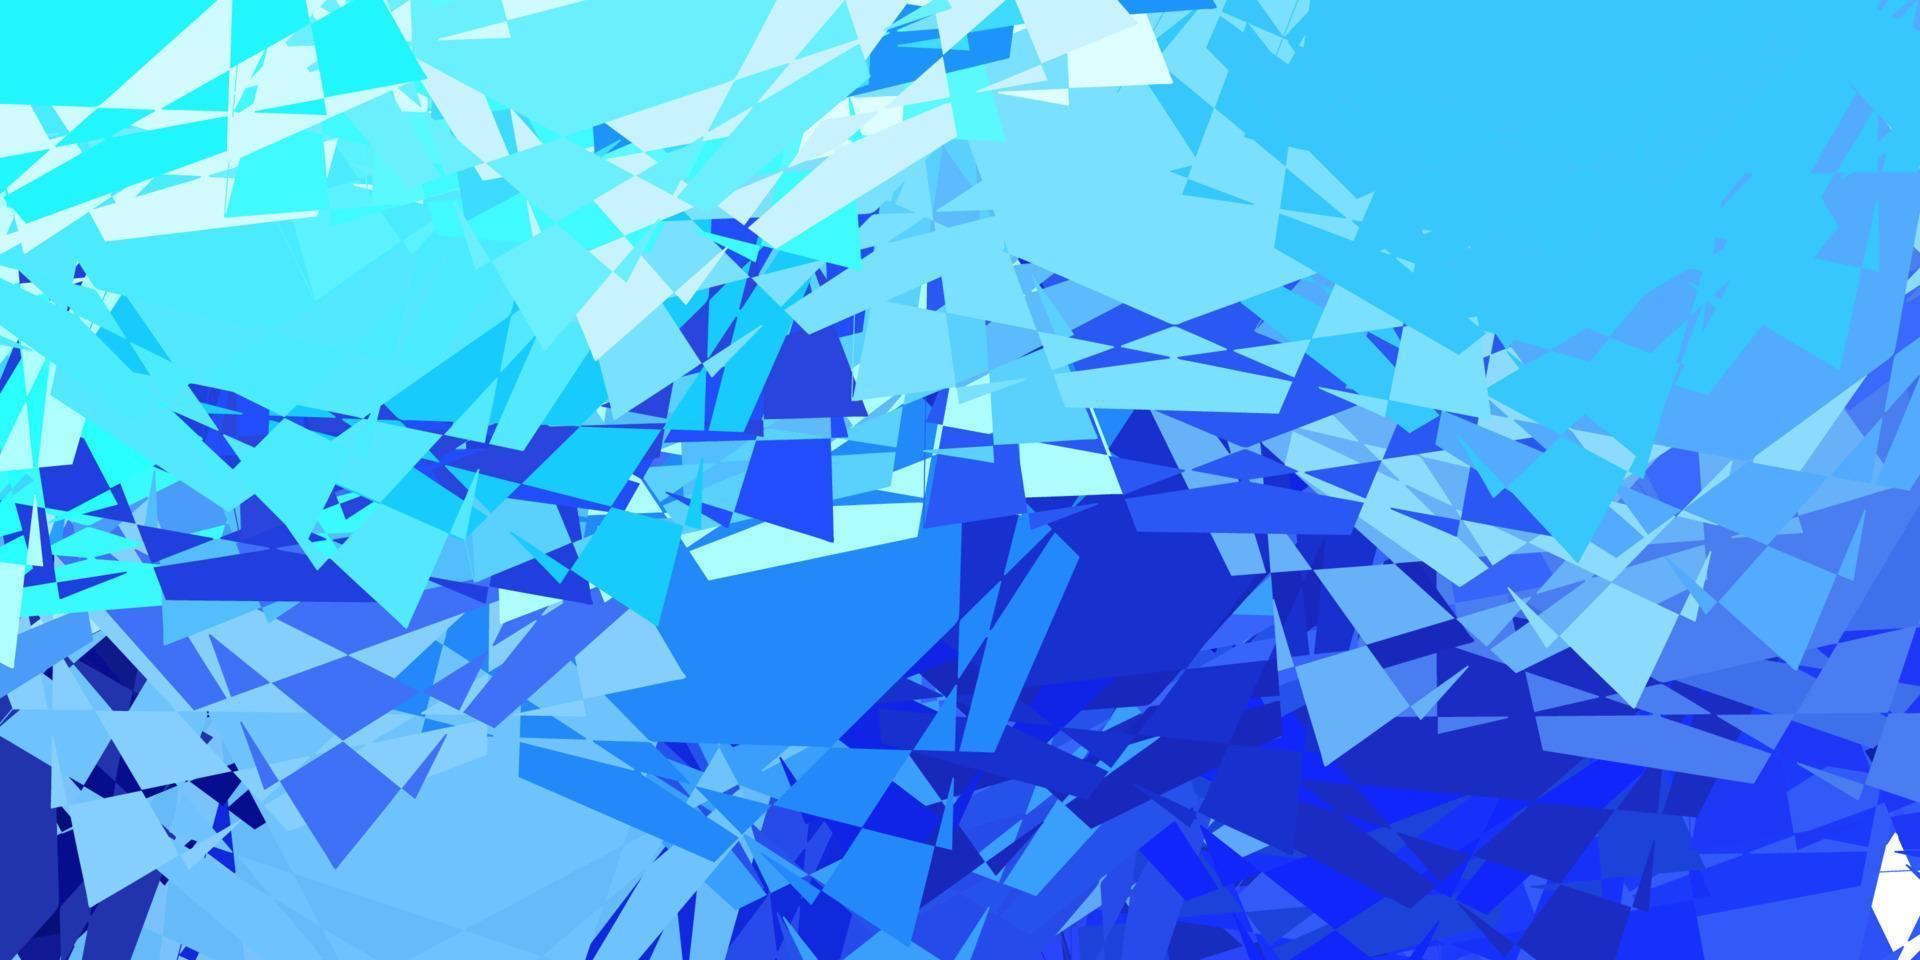 texture vettoriale blu chiaro con triangoli casuali.